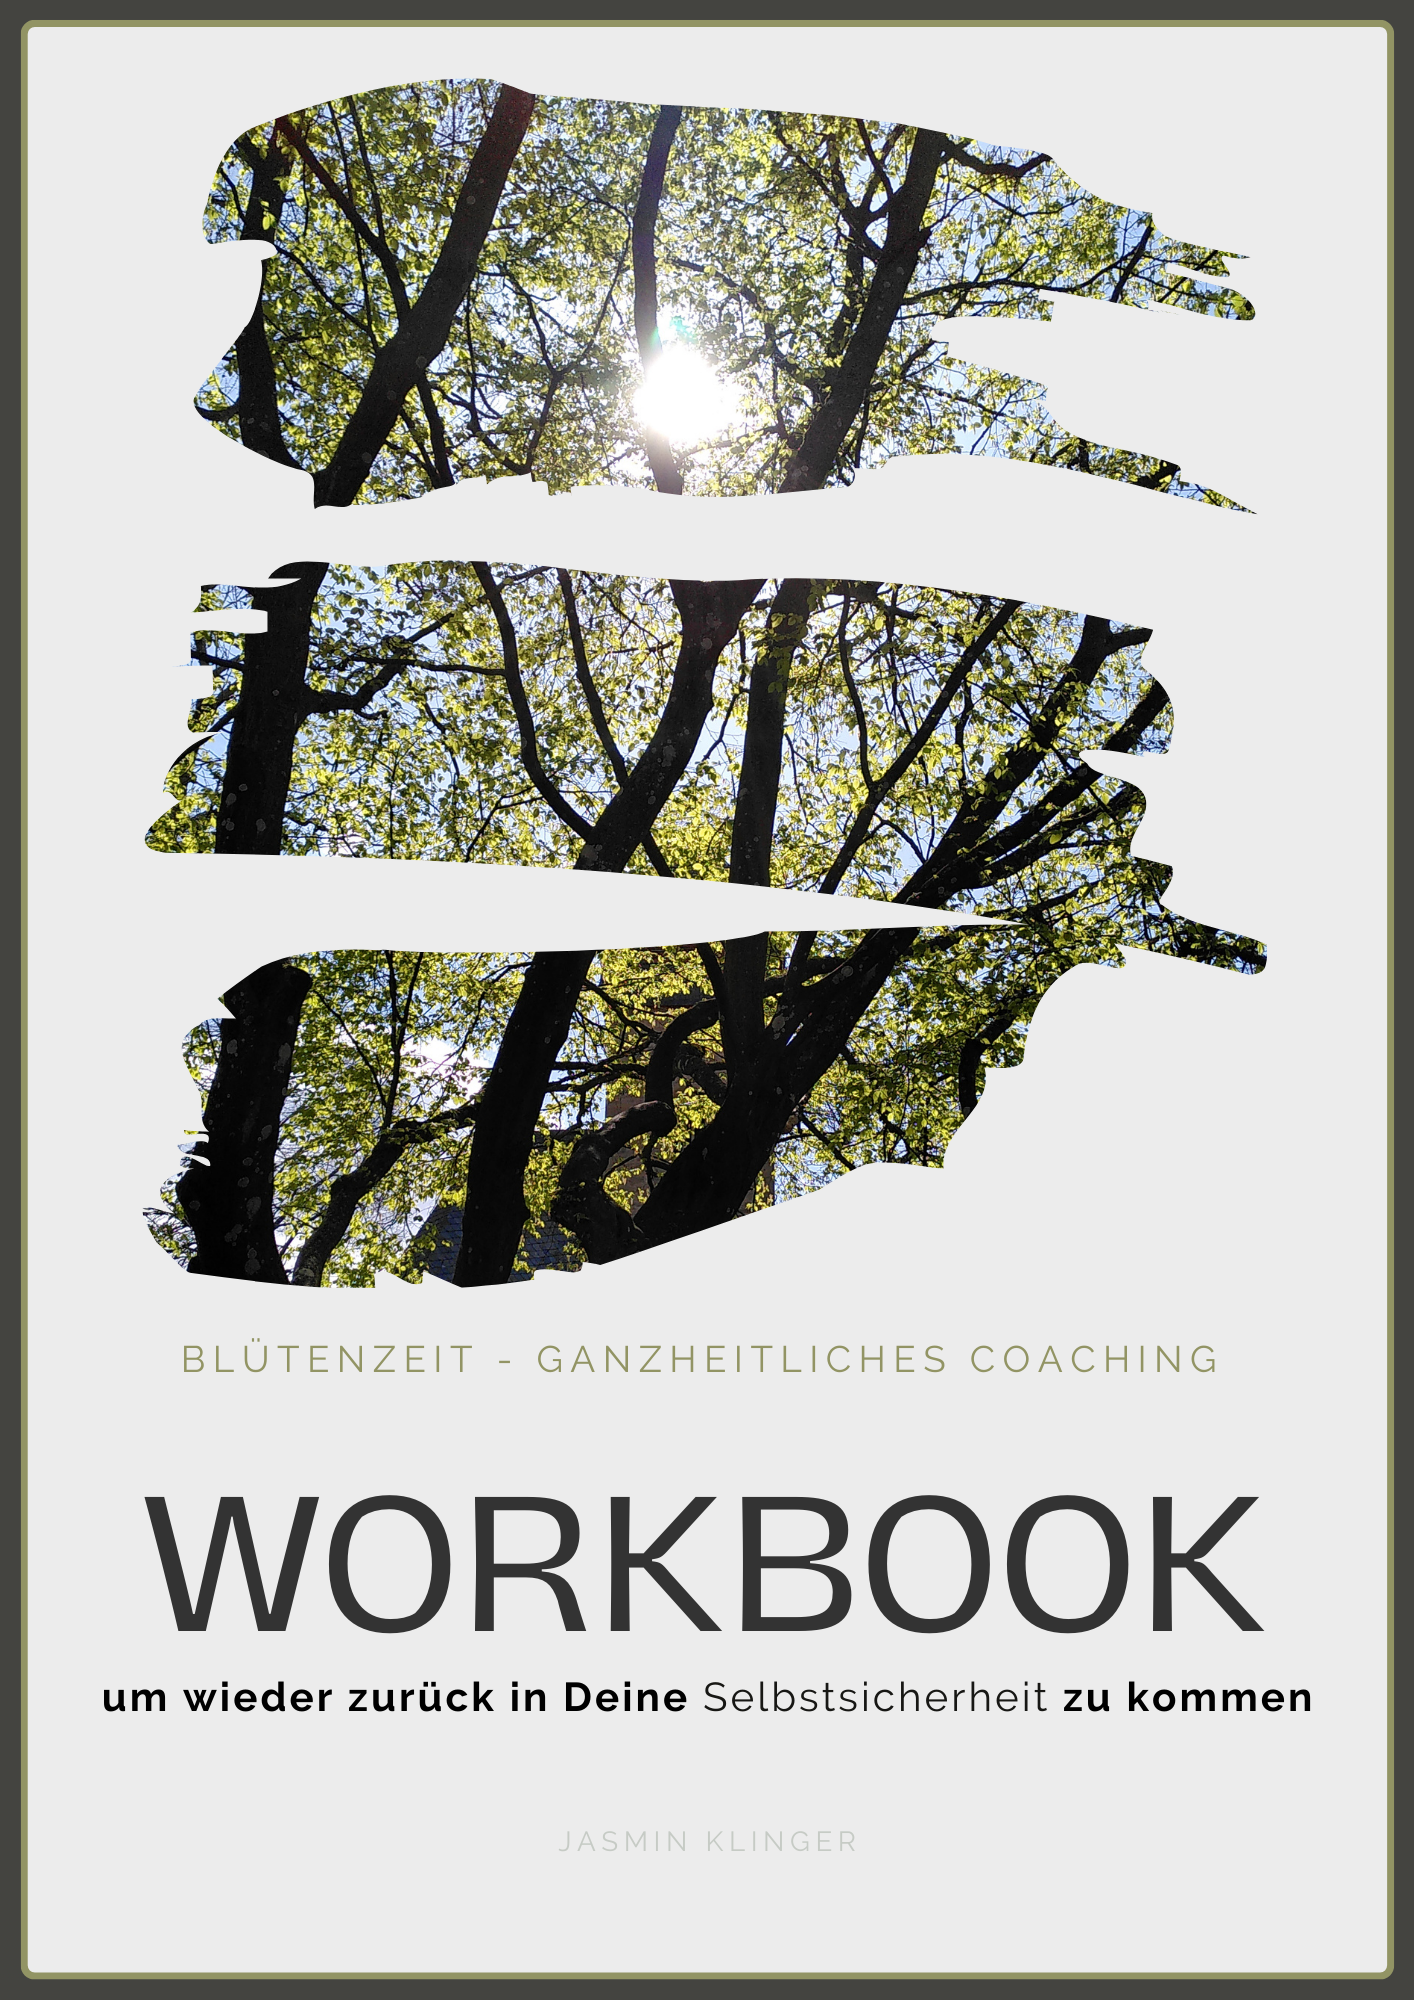 Workbook - Selbstsicherheit.
Selbstbewusstsein. Selbstvertrauen. Selbst bestimmen. Praktische Übungen und Selbstreflektion. 